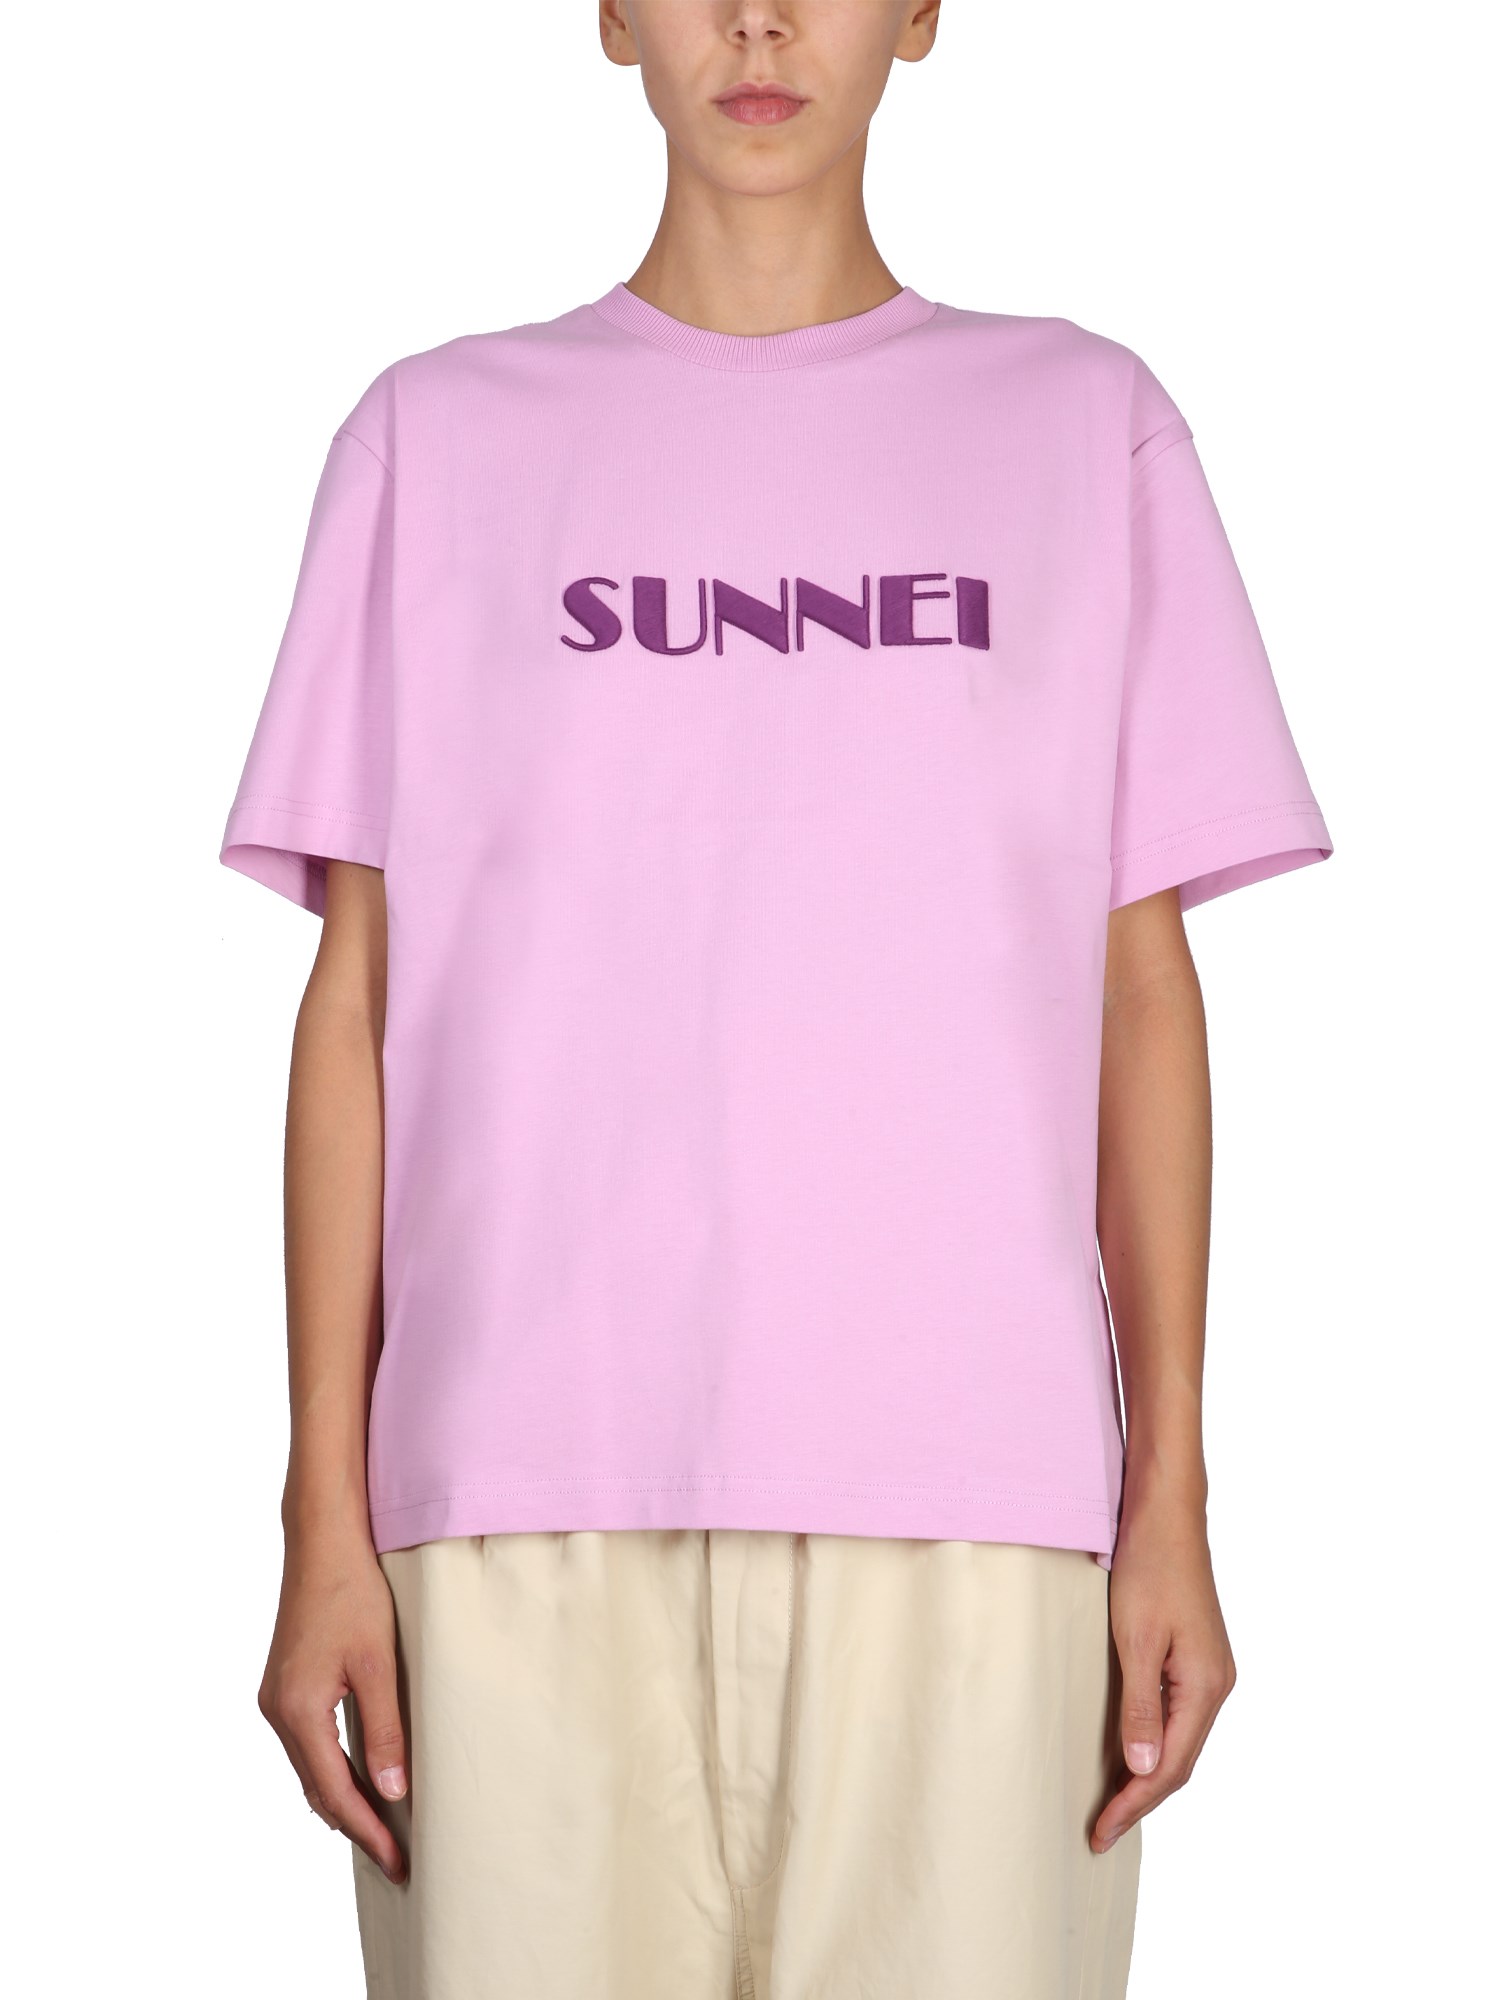 sunnei crewneck t-shirt